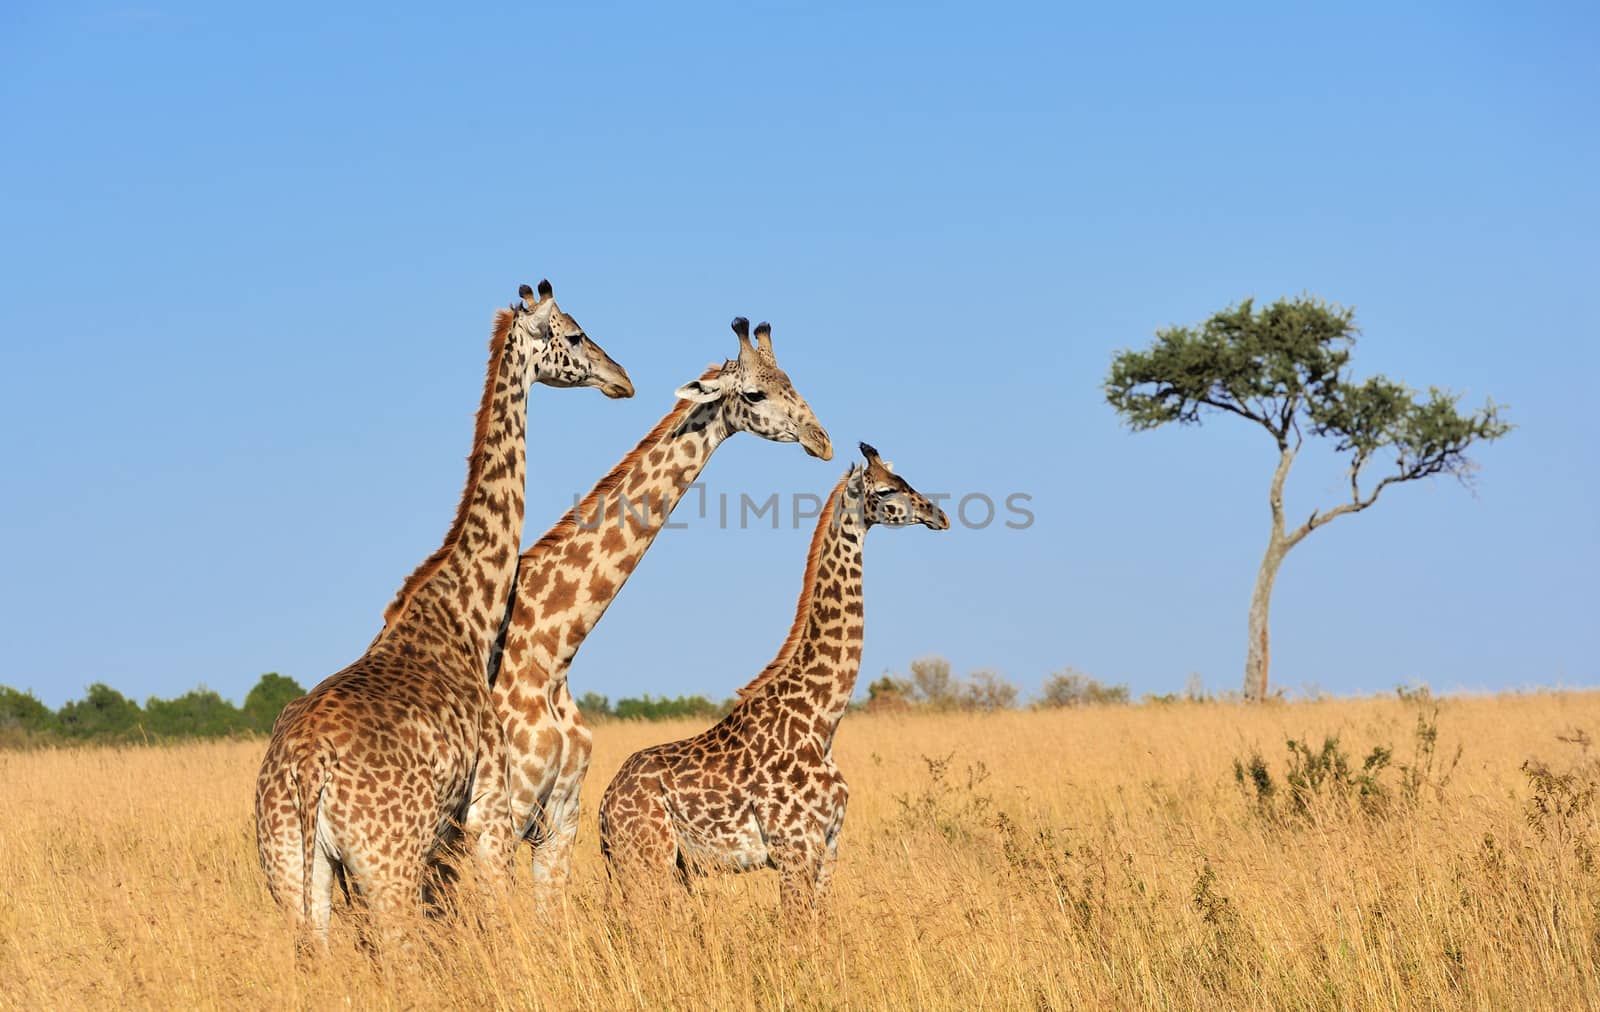 Giraffe in National park of Kenya, Africa